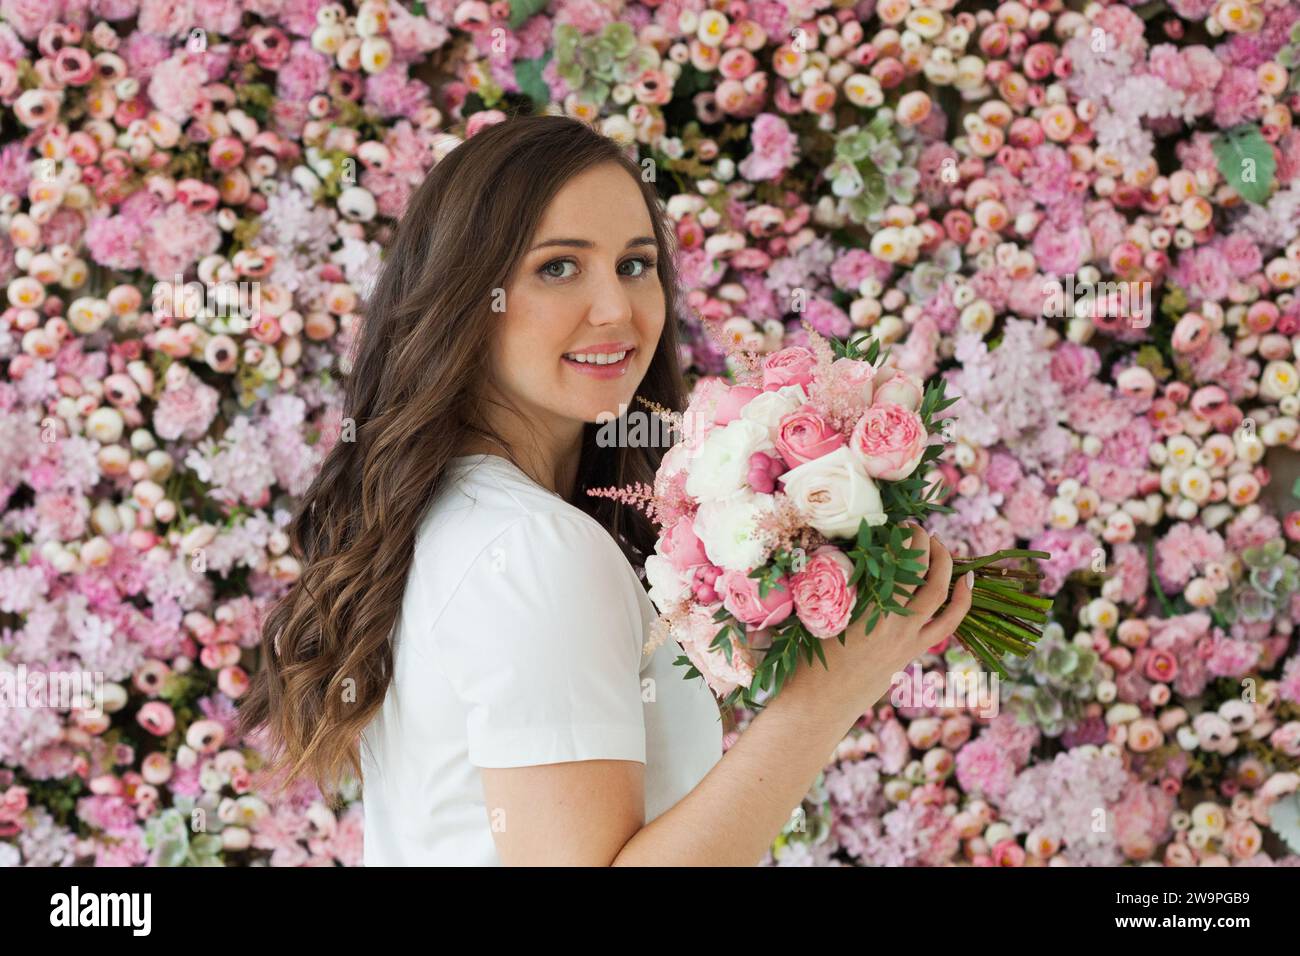 Nette glückliche Brünette Frau mit niedlichem Lächeln, die Blumengeschenk hält und auf rosa floralem Hintergrund posiert. Blooming, Liebe, Geburtstagskonzept am 8. märz Stockfoto